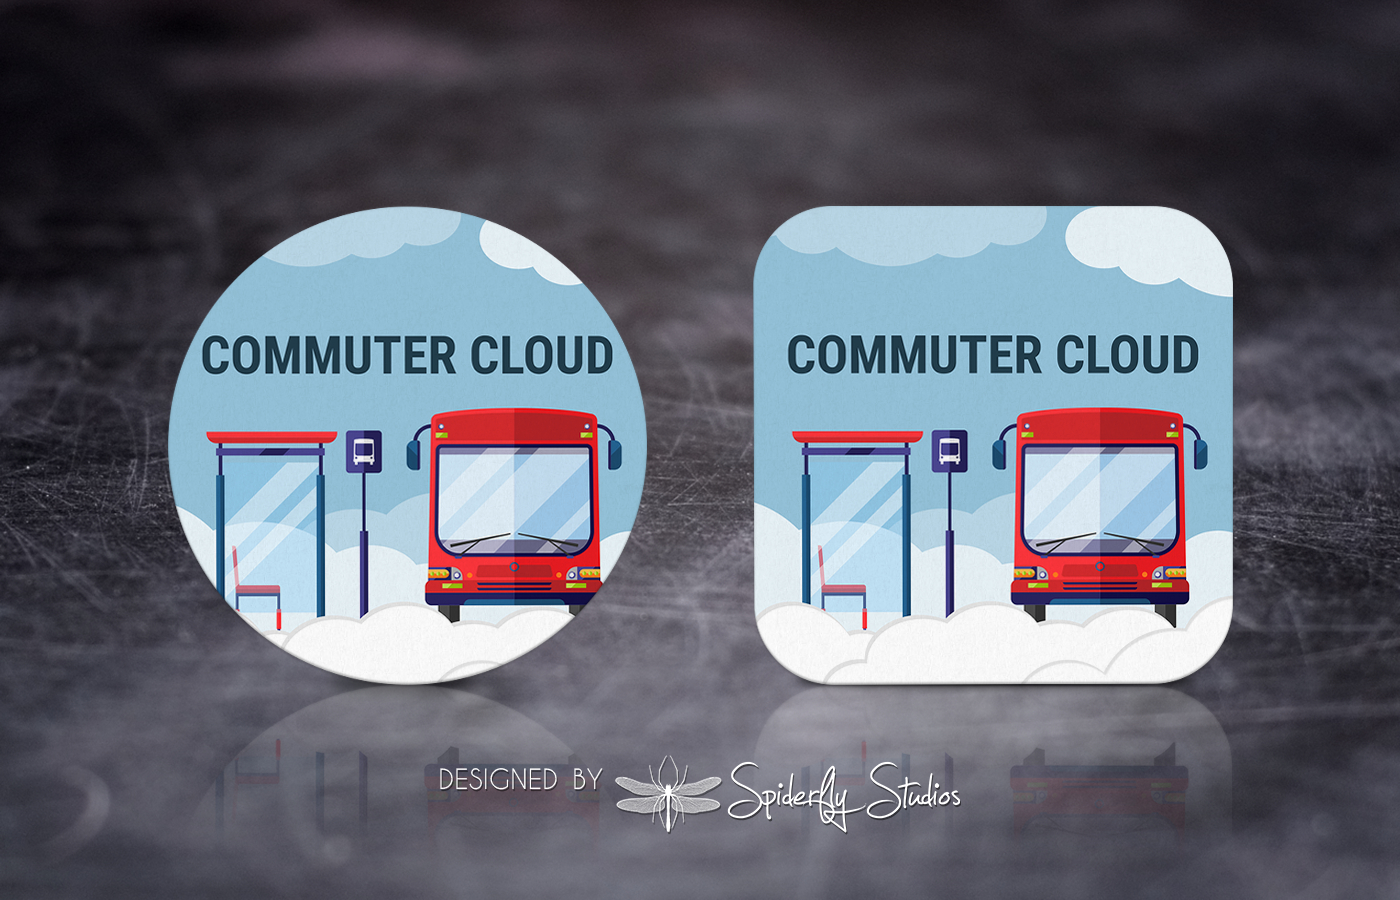 Commuter Cloud - Launcher Icon Design